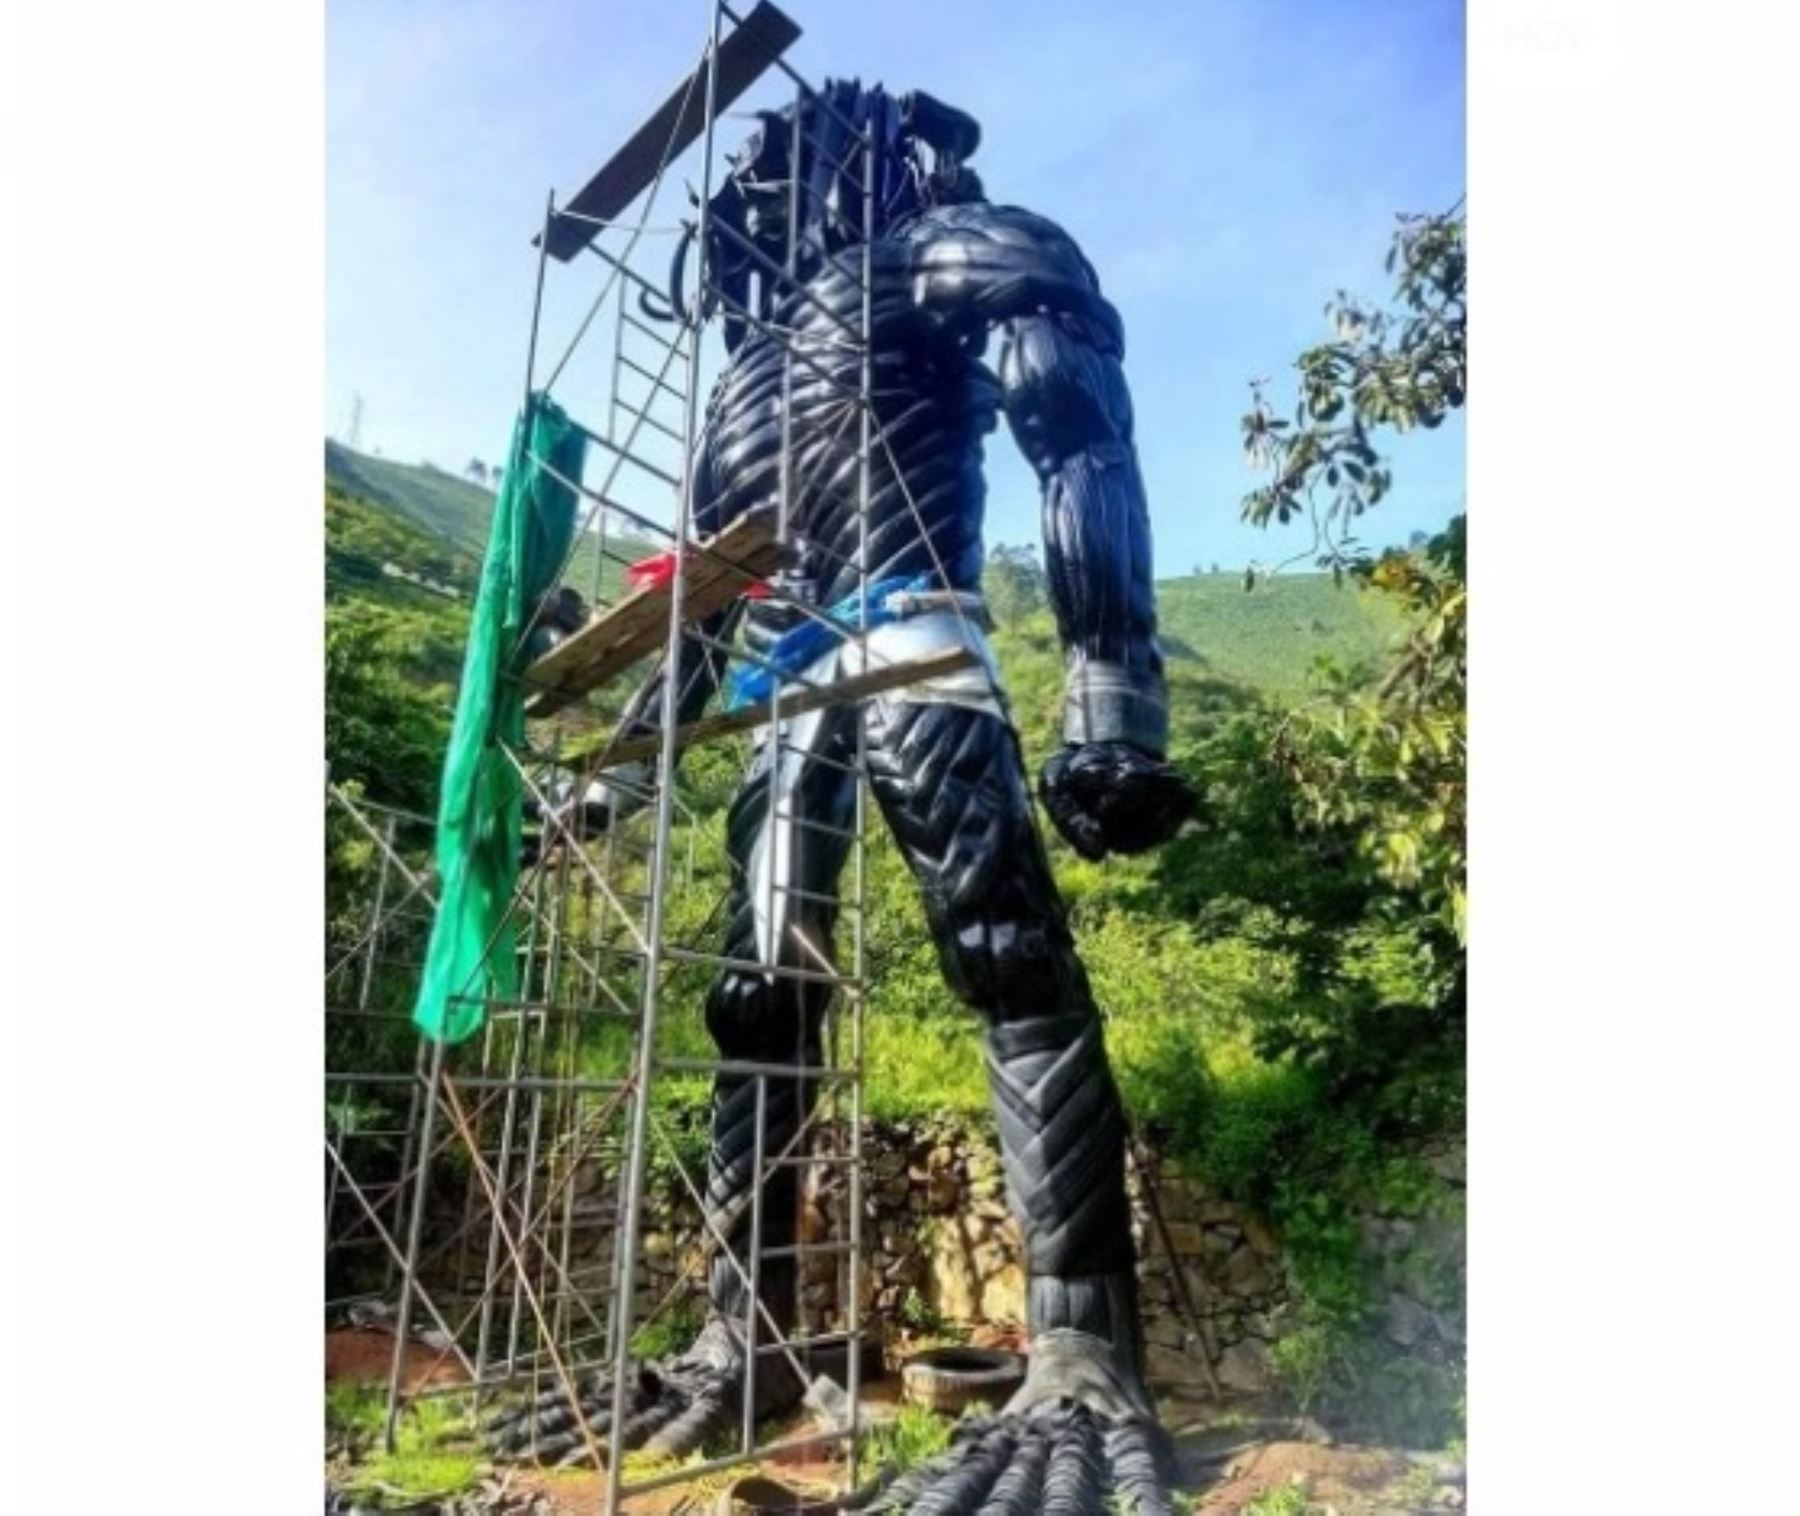 El Depredador de Huarochirí fue elaborado con llantas recicladas y se ha convertido en un importante atractivo turístico. Foto: internet/medios.